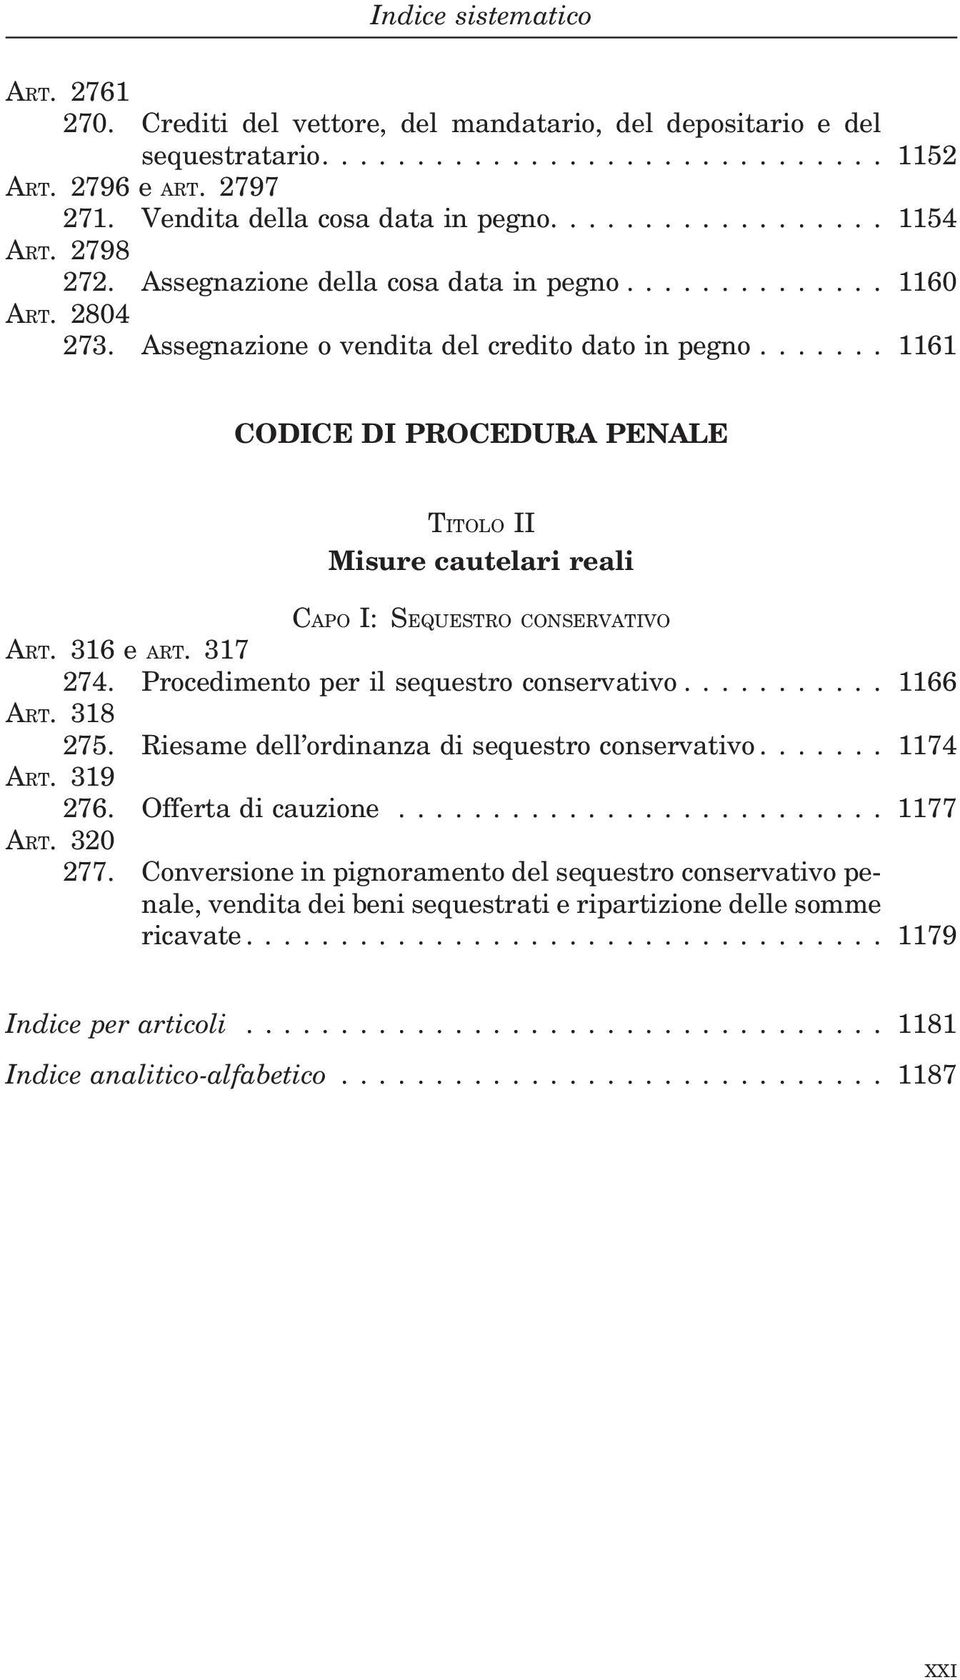 ...... 1161 CODICE DI PROCEDURA PENALE TITOLO II Misure cautelari reali CAPO I: SEQUESTRO CONSERVATIVO ART. 316 e ART. 317 274. Procedimento per il sequestro conservativo........... 1166 ART. 318 275.